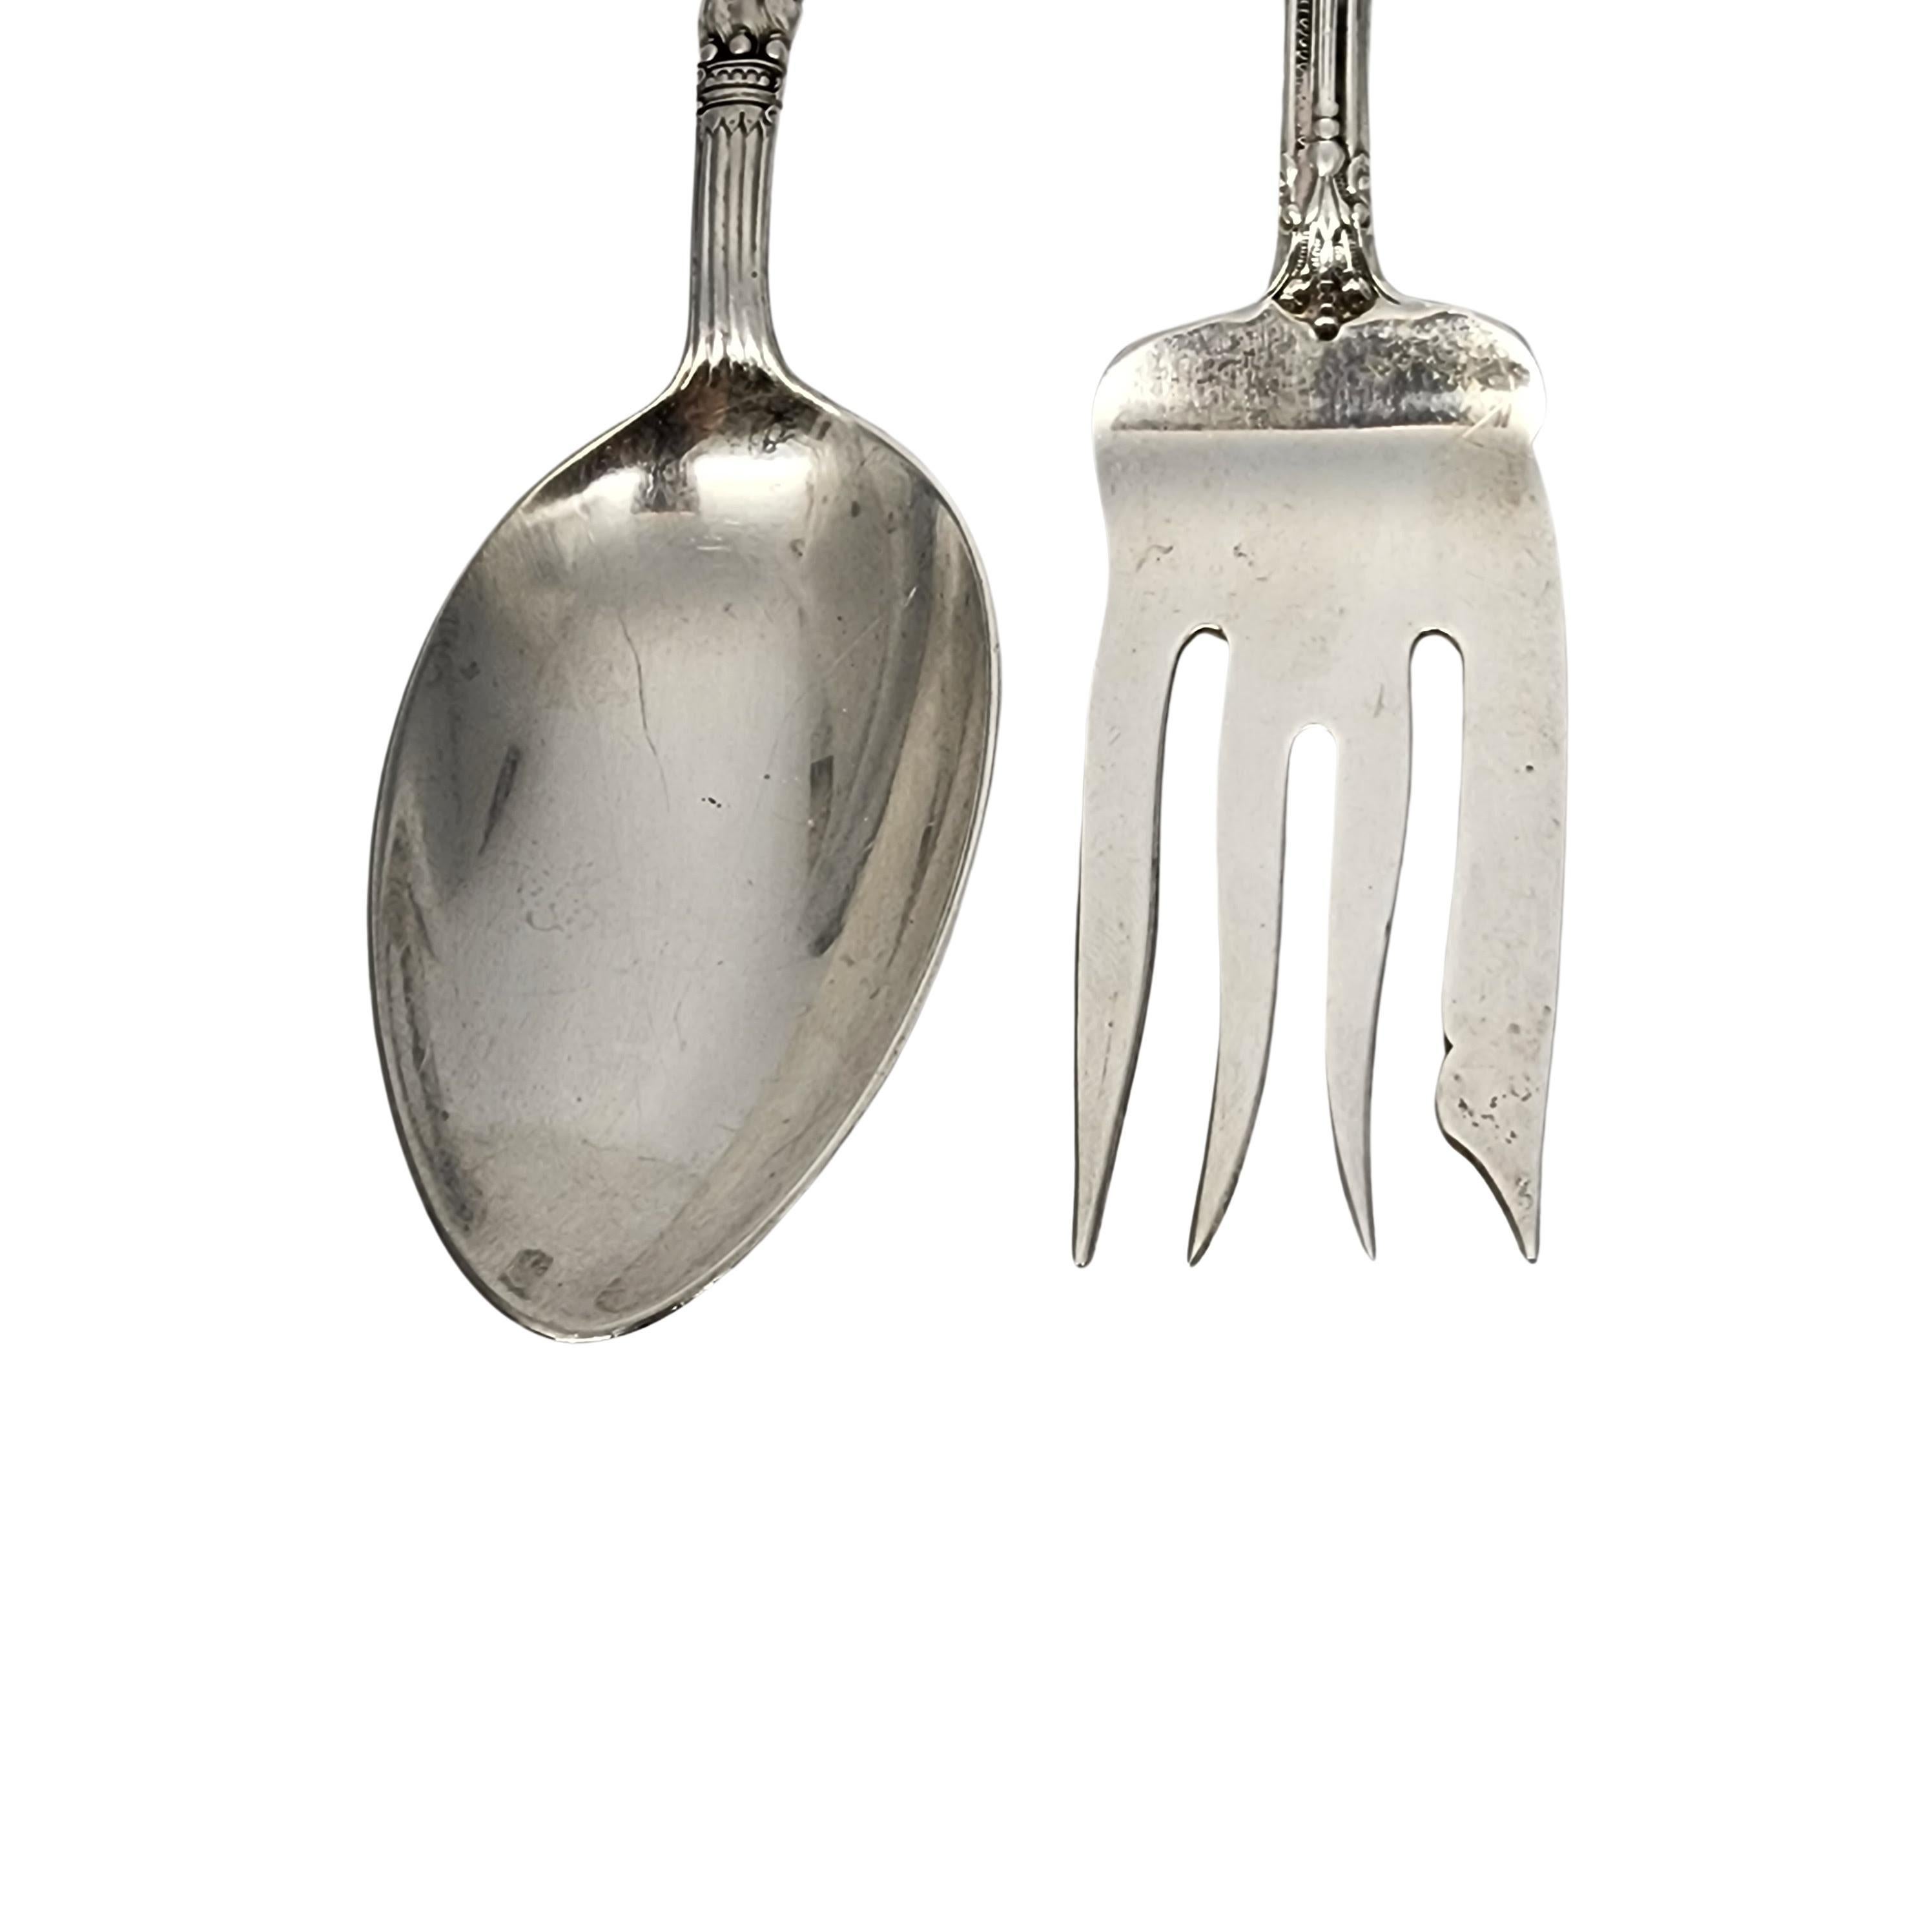 Gorham Versailles Sterling Silver Serving Fork & Spoon Set 8 1/4